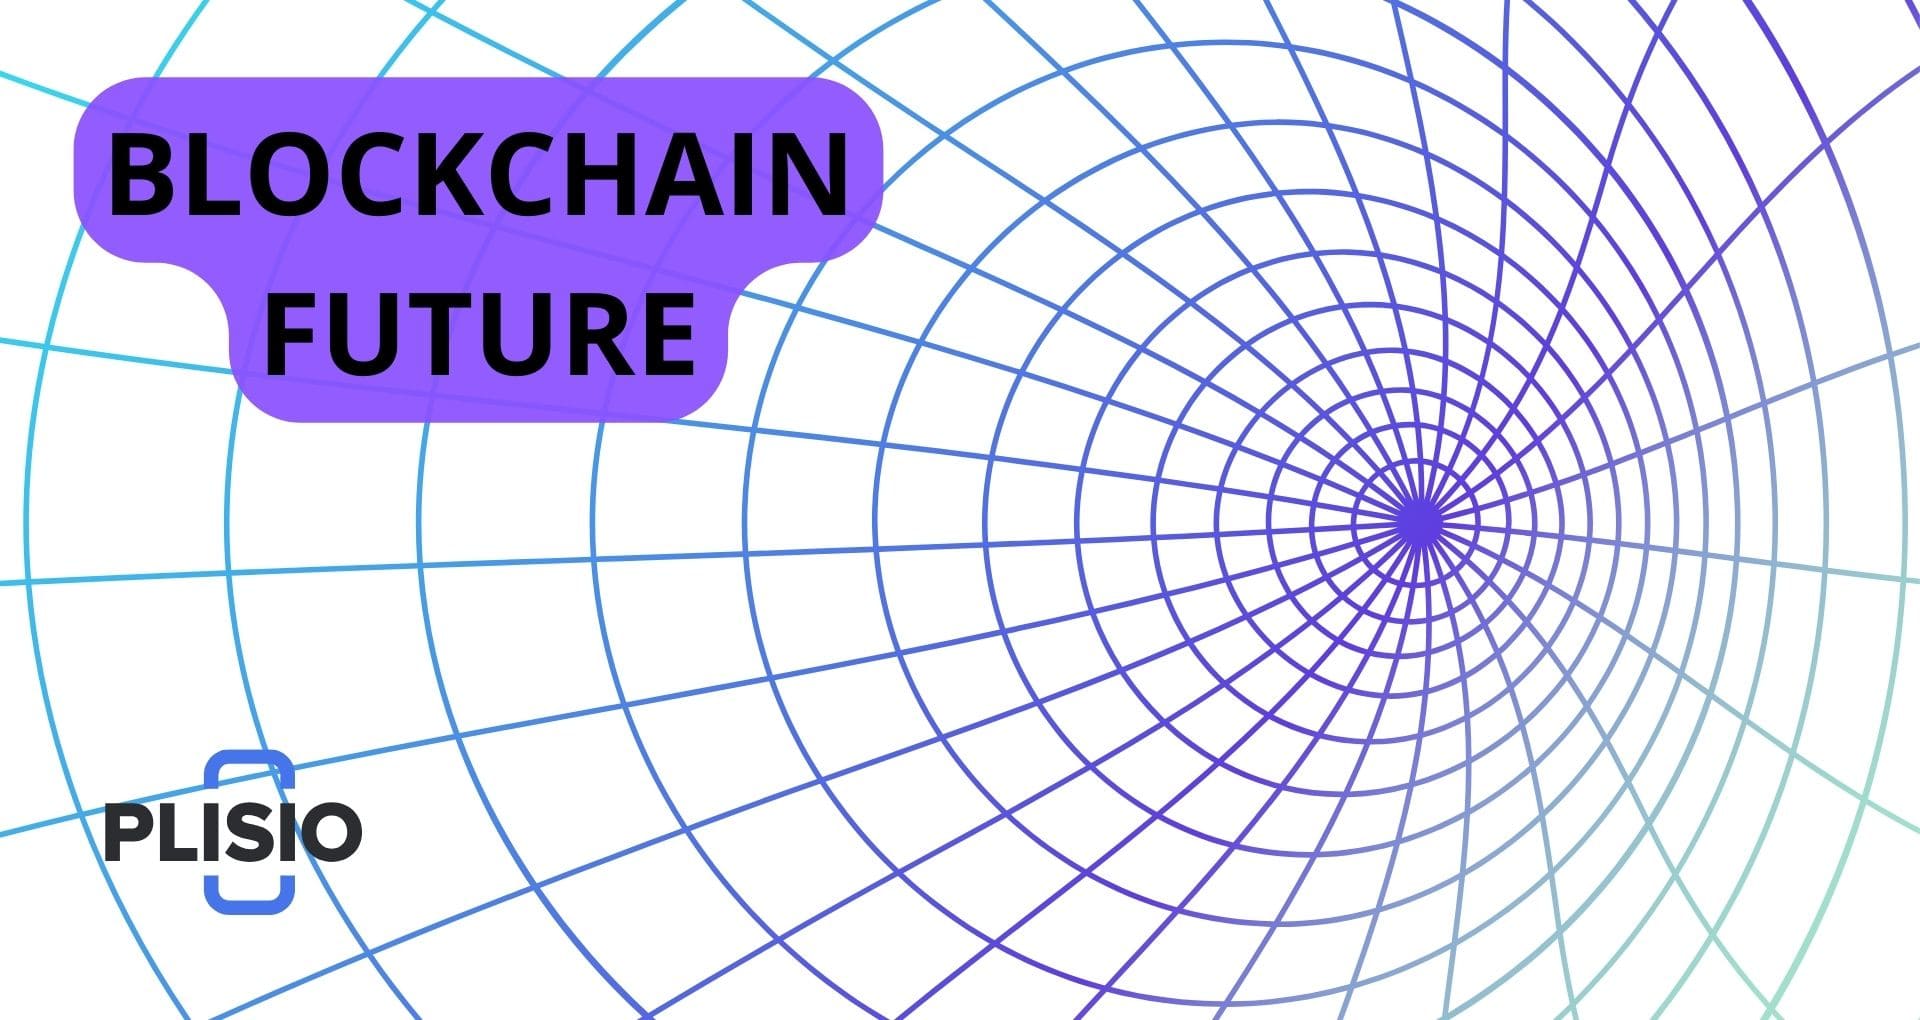 Blockchain-Zukunft: Transformation von 10 Sektoren mit radikaler I...